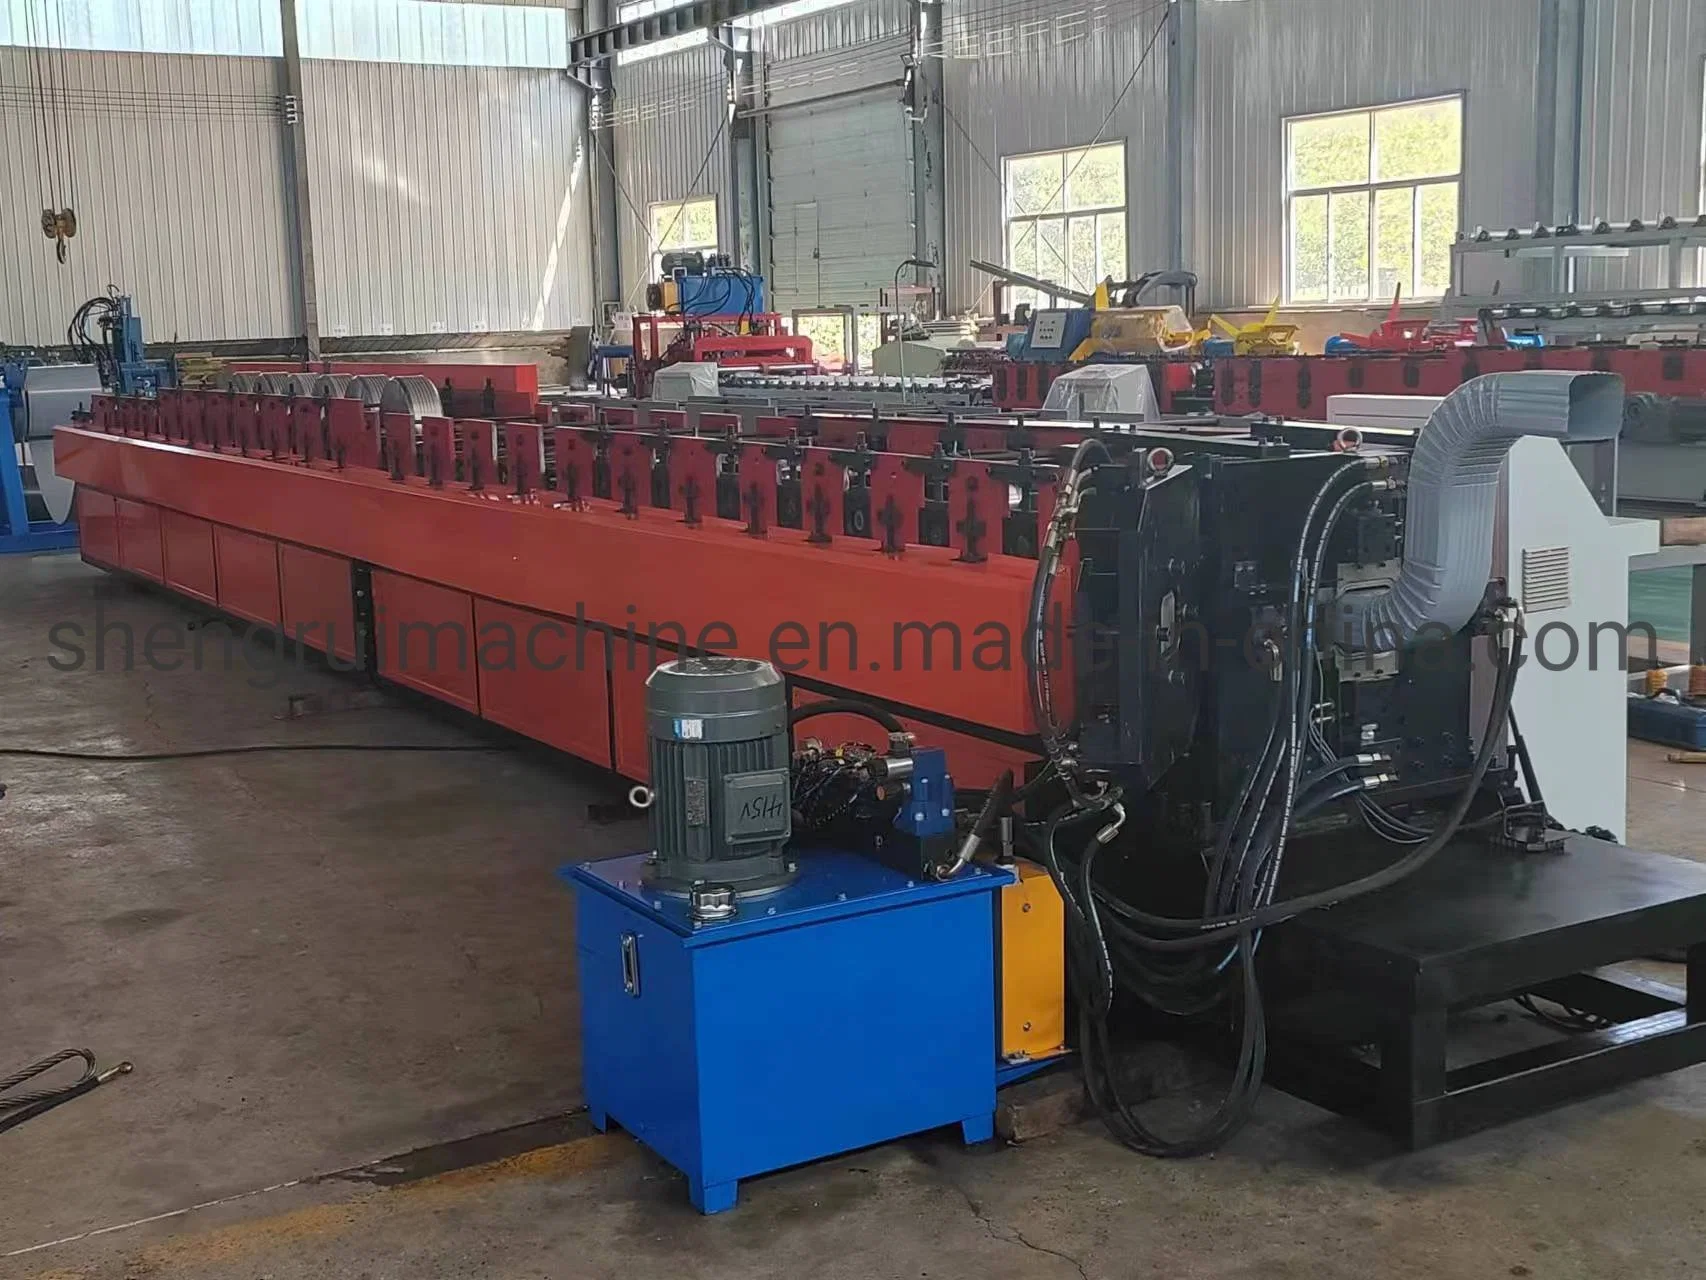 Machine de formage de tuyaux d'eau du fournisseur chinois en vente chaude Machine de roulage de tuyaux de descente